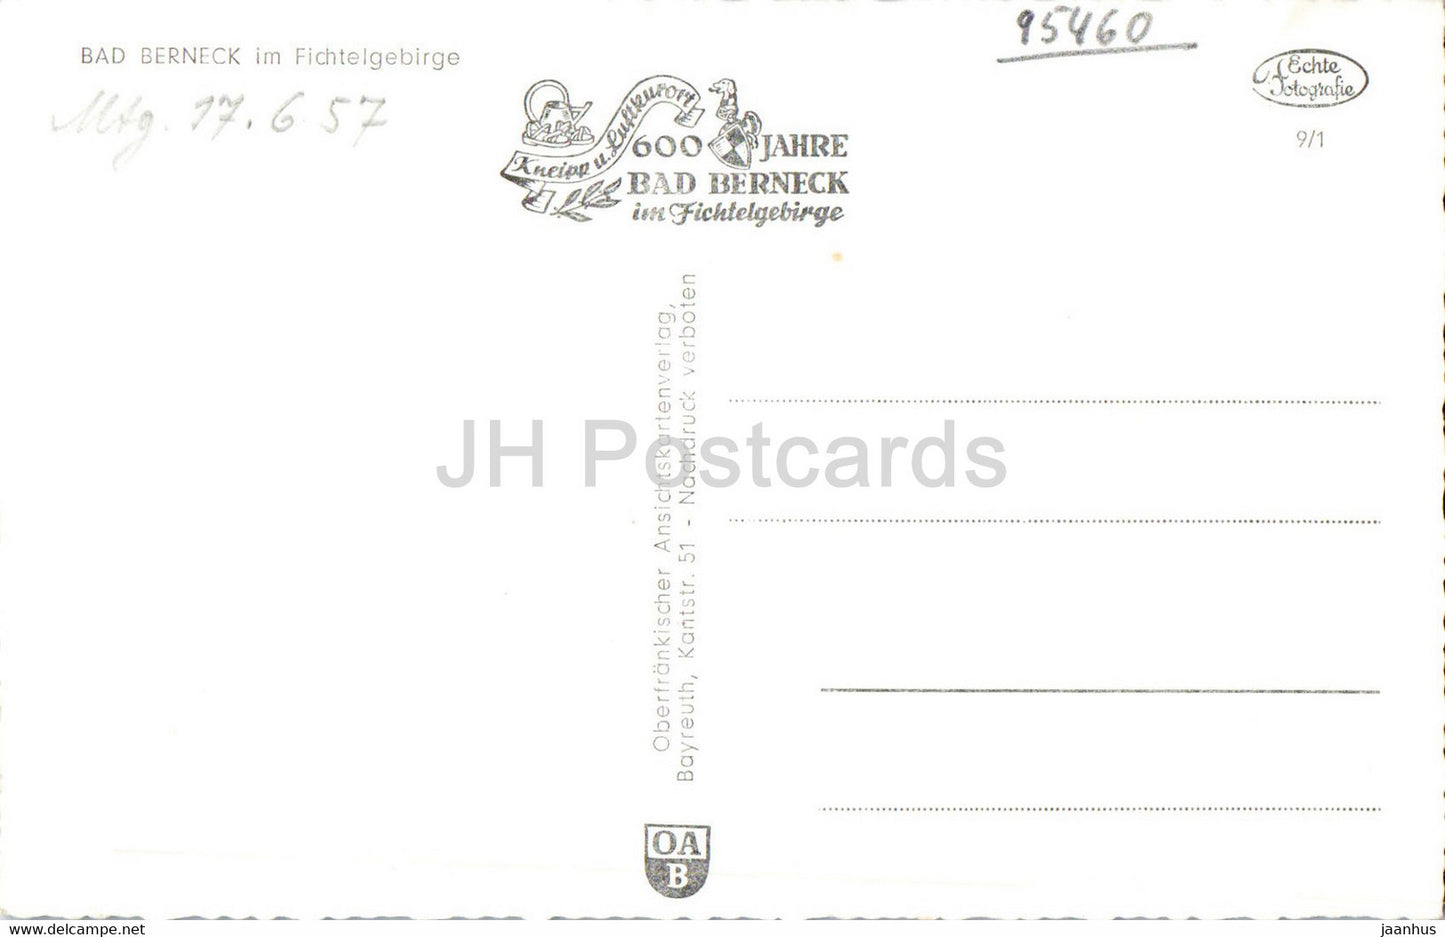 Bad Berneck im Fichtelgebirge - alte Postkarte - Deutschland - unbenutzt